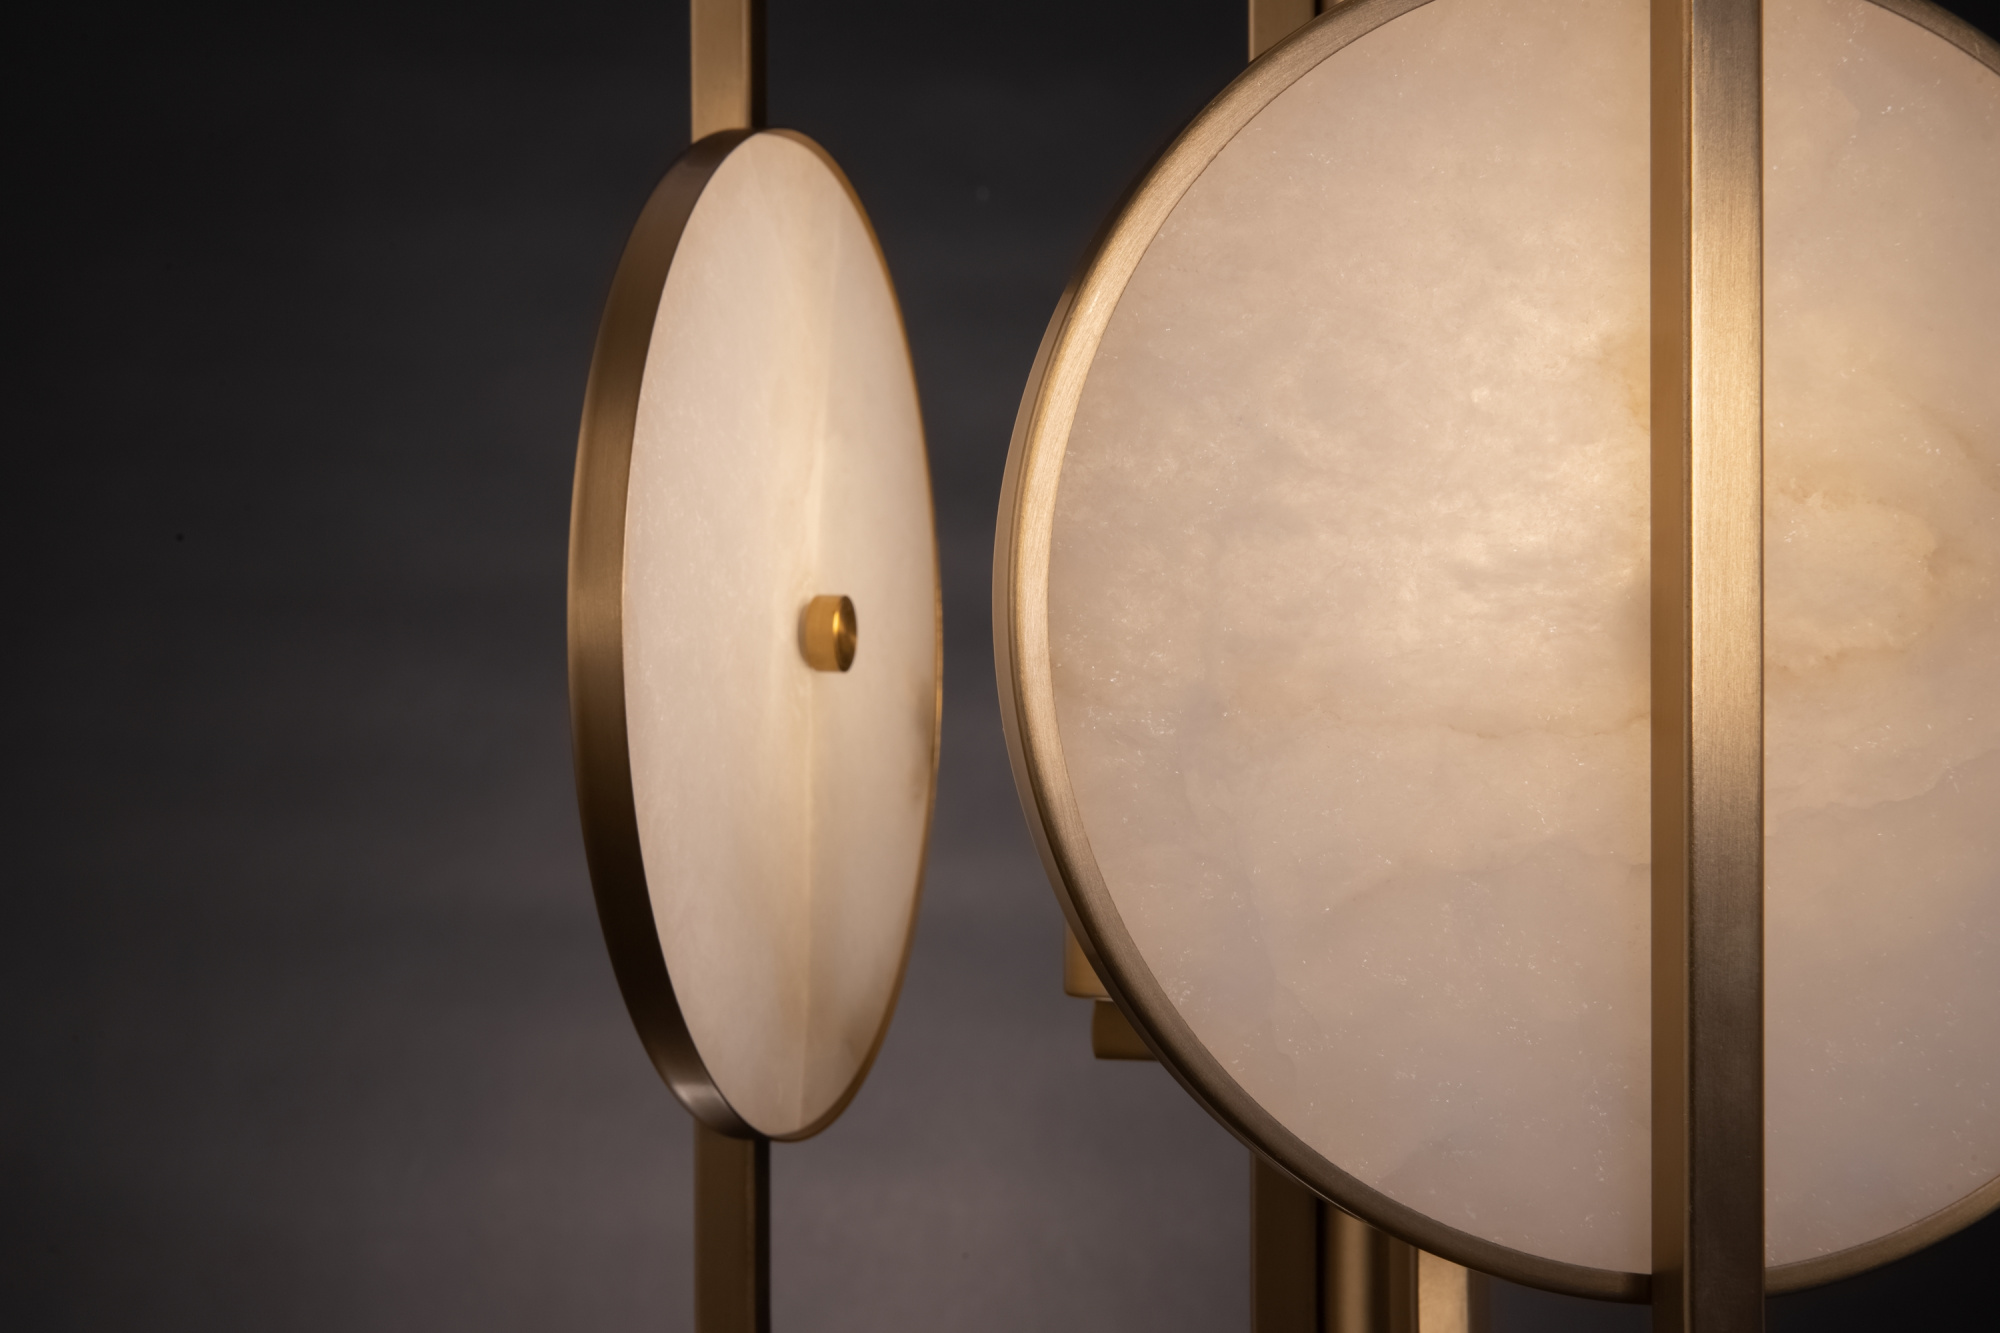 подвесной светильник maytoni marmo mod099pl-06g